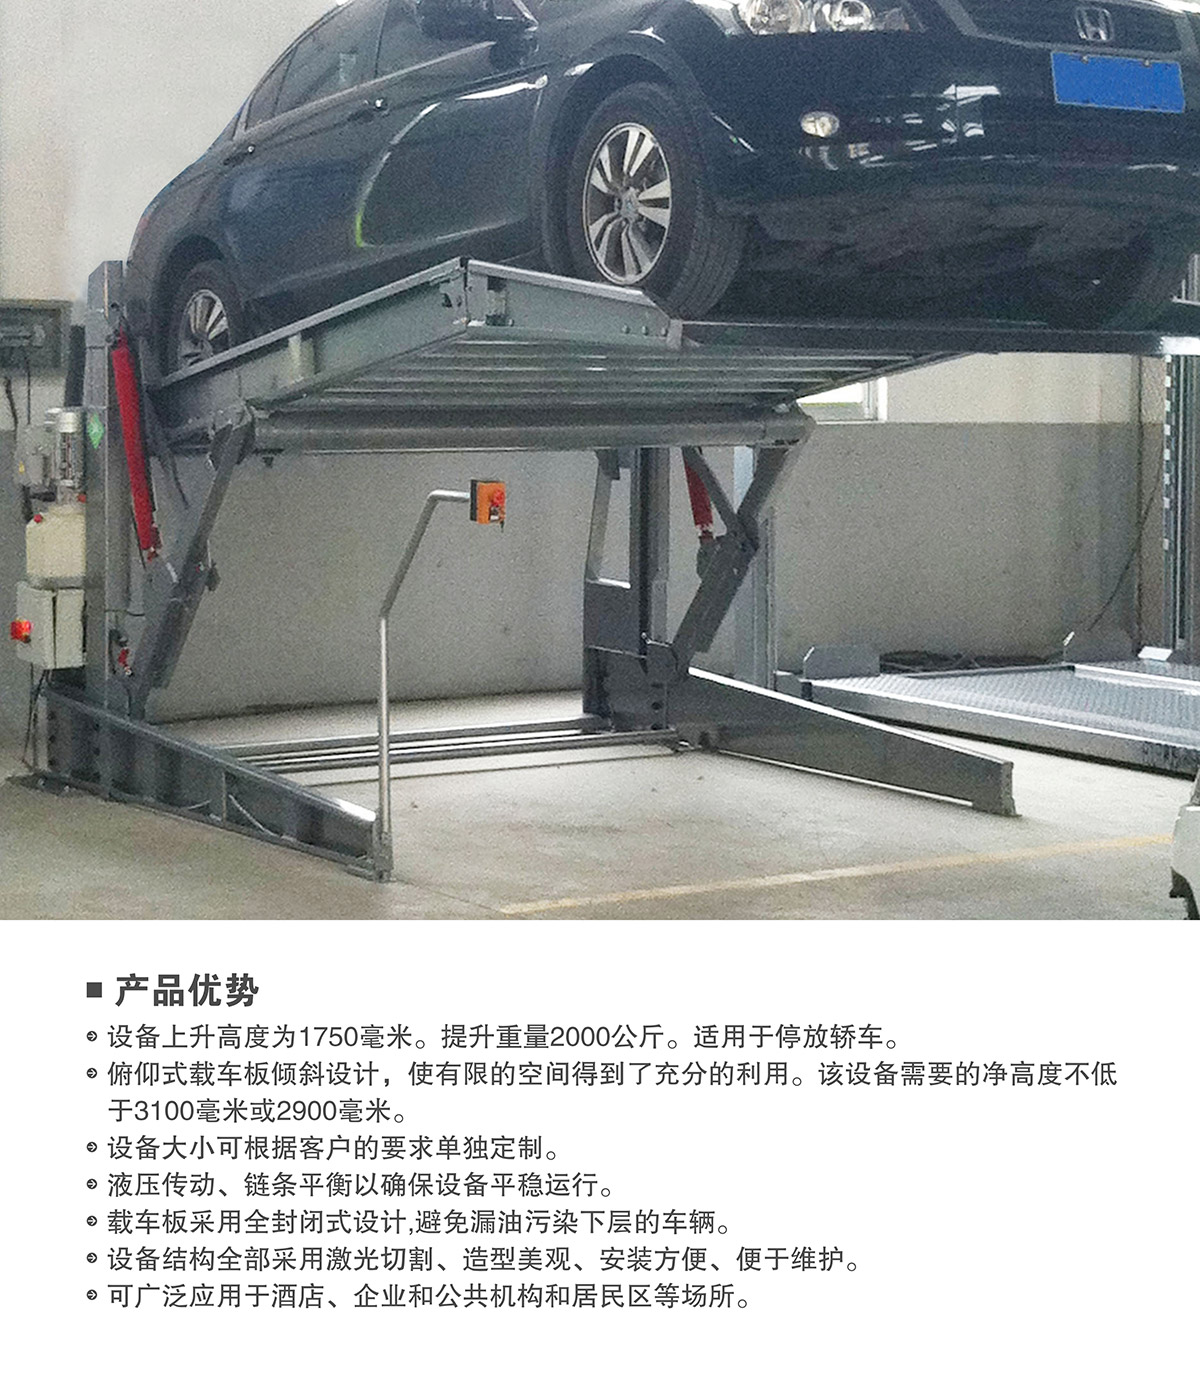 立体停车俯仰式简易升降机械停车设备产品优势.jpg